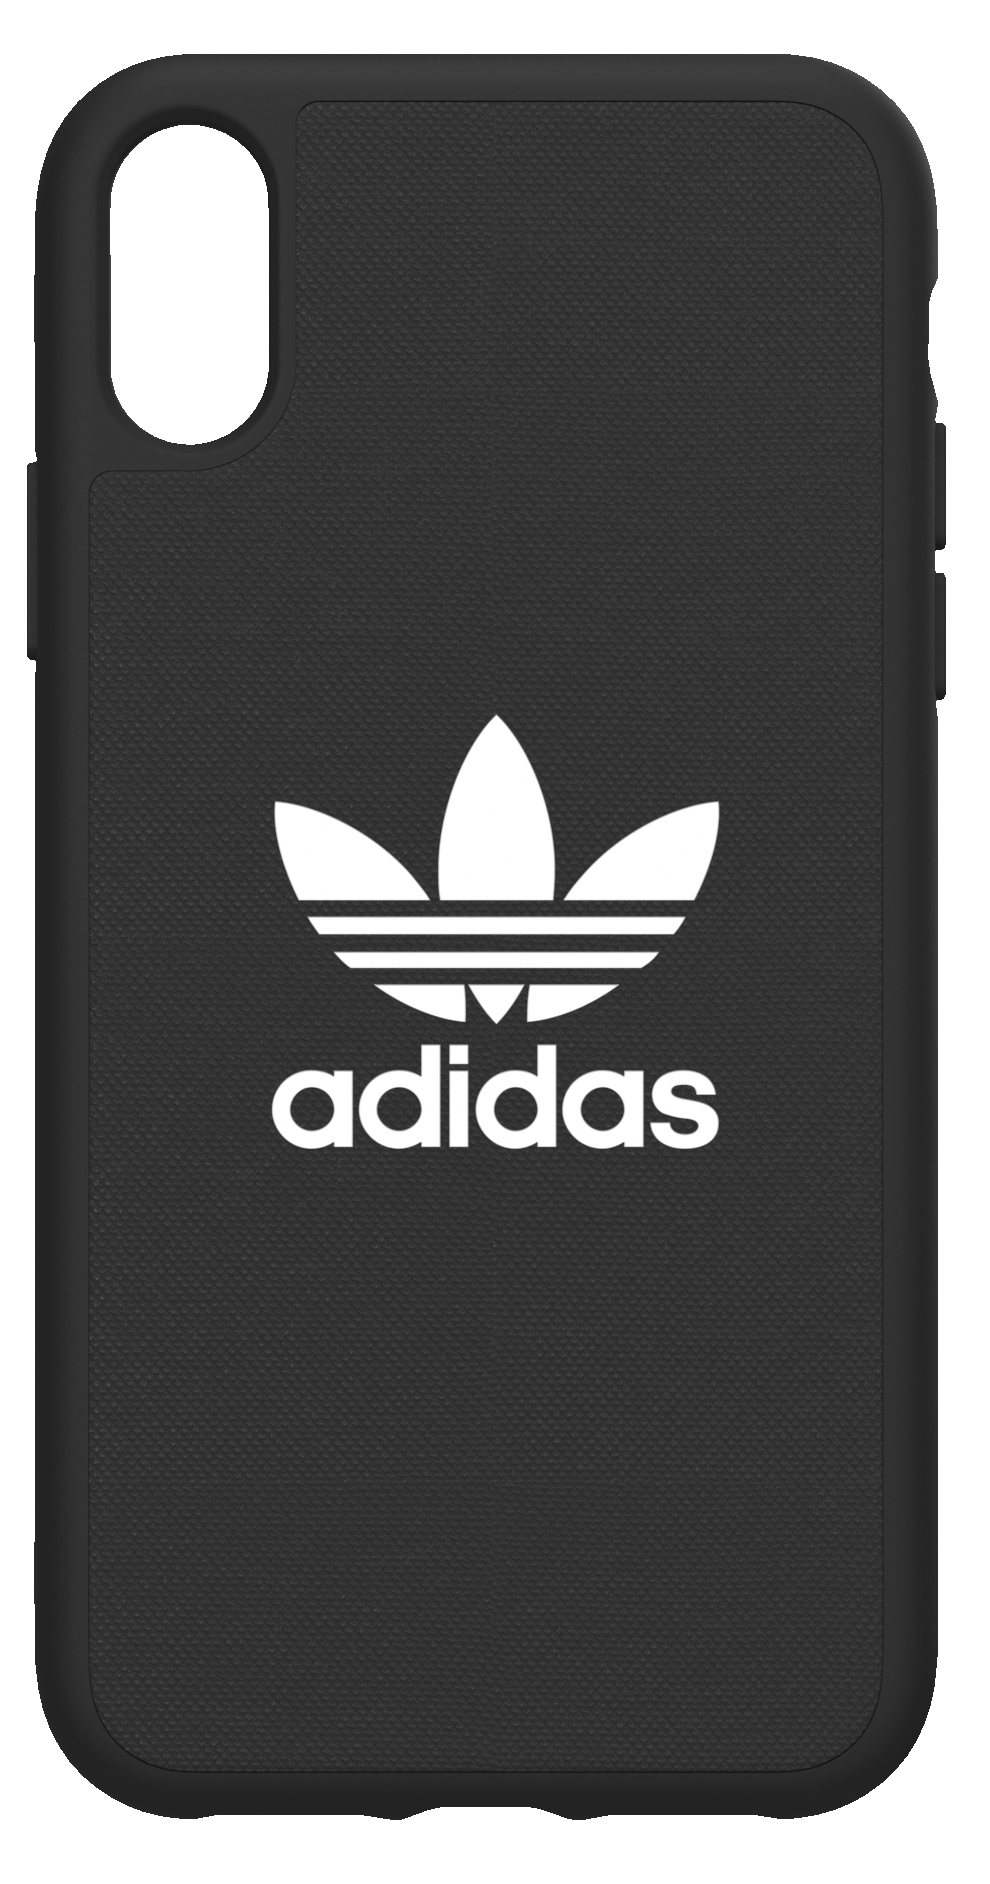 Adidas deksel iPhone XR (sort) - Deksler og etui til mobiltelefon - Elkjøp